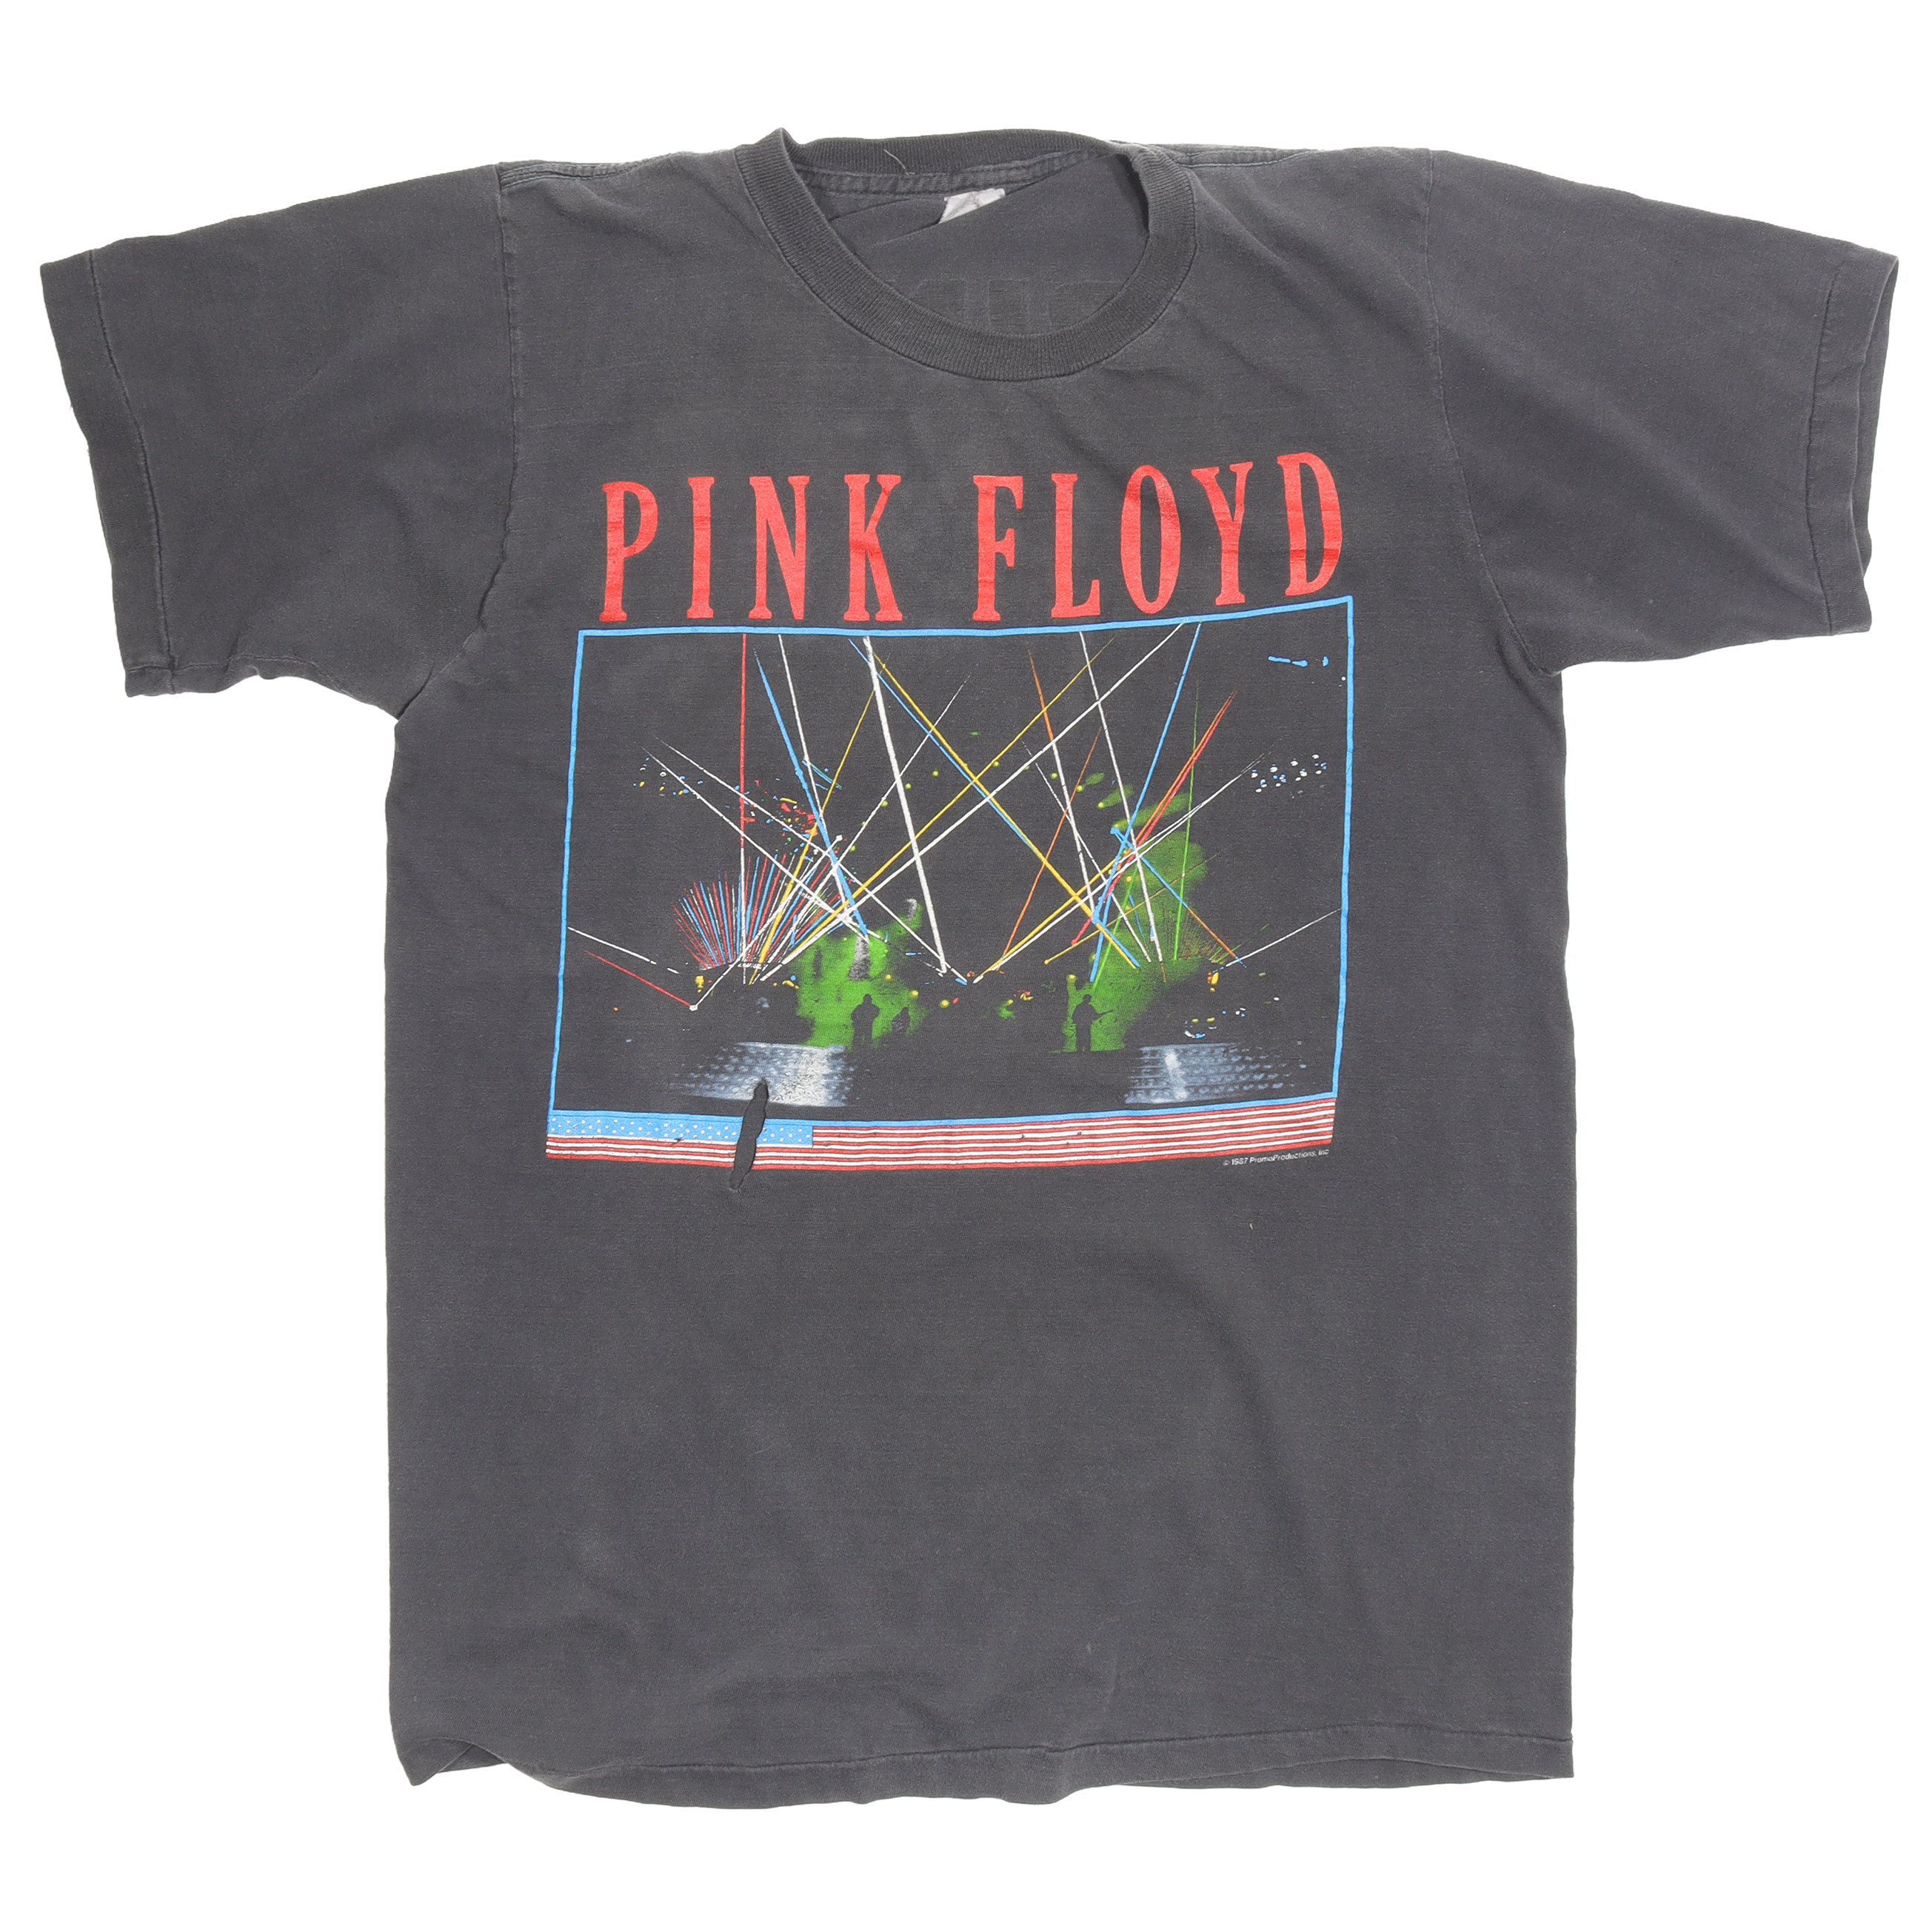 1987 Pink Floyd World Tour T-Shirt